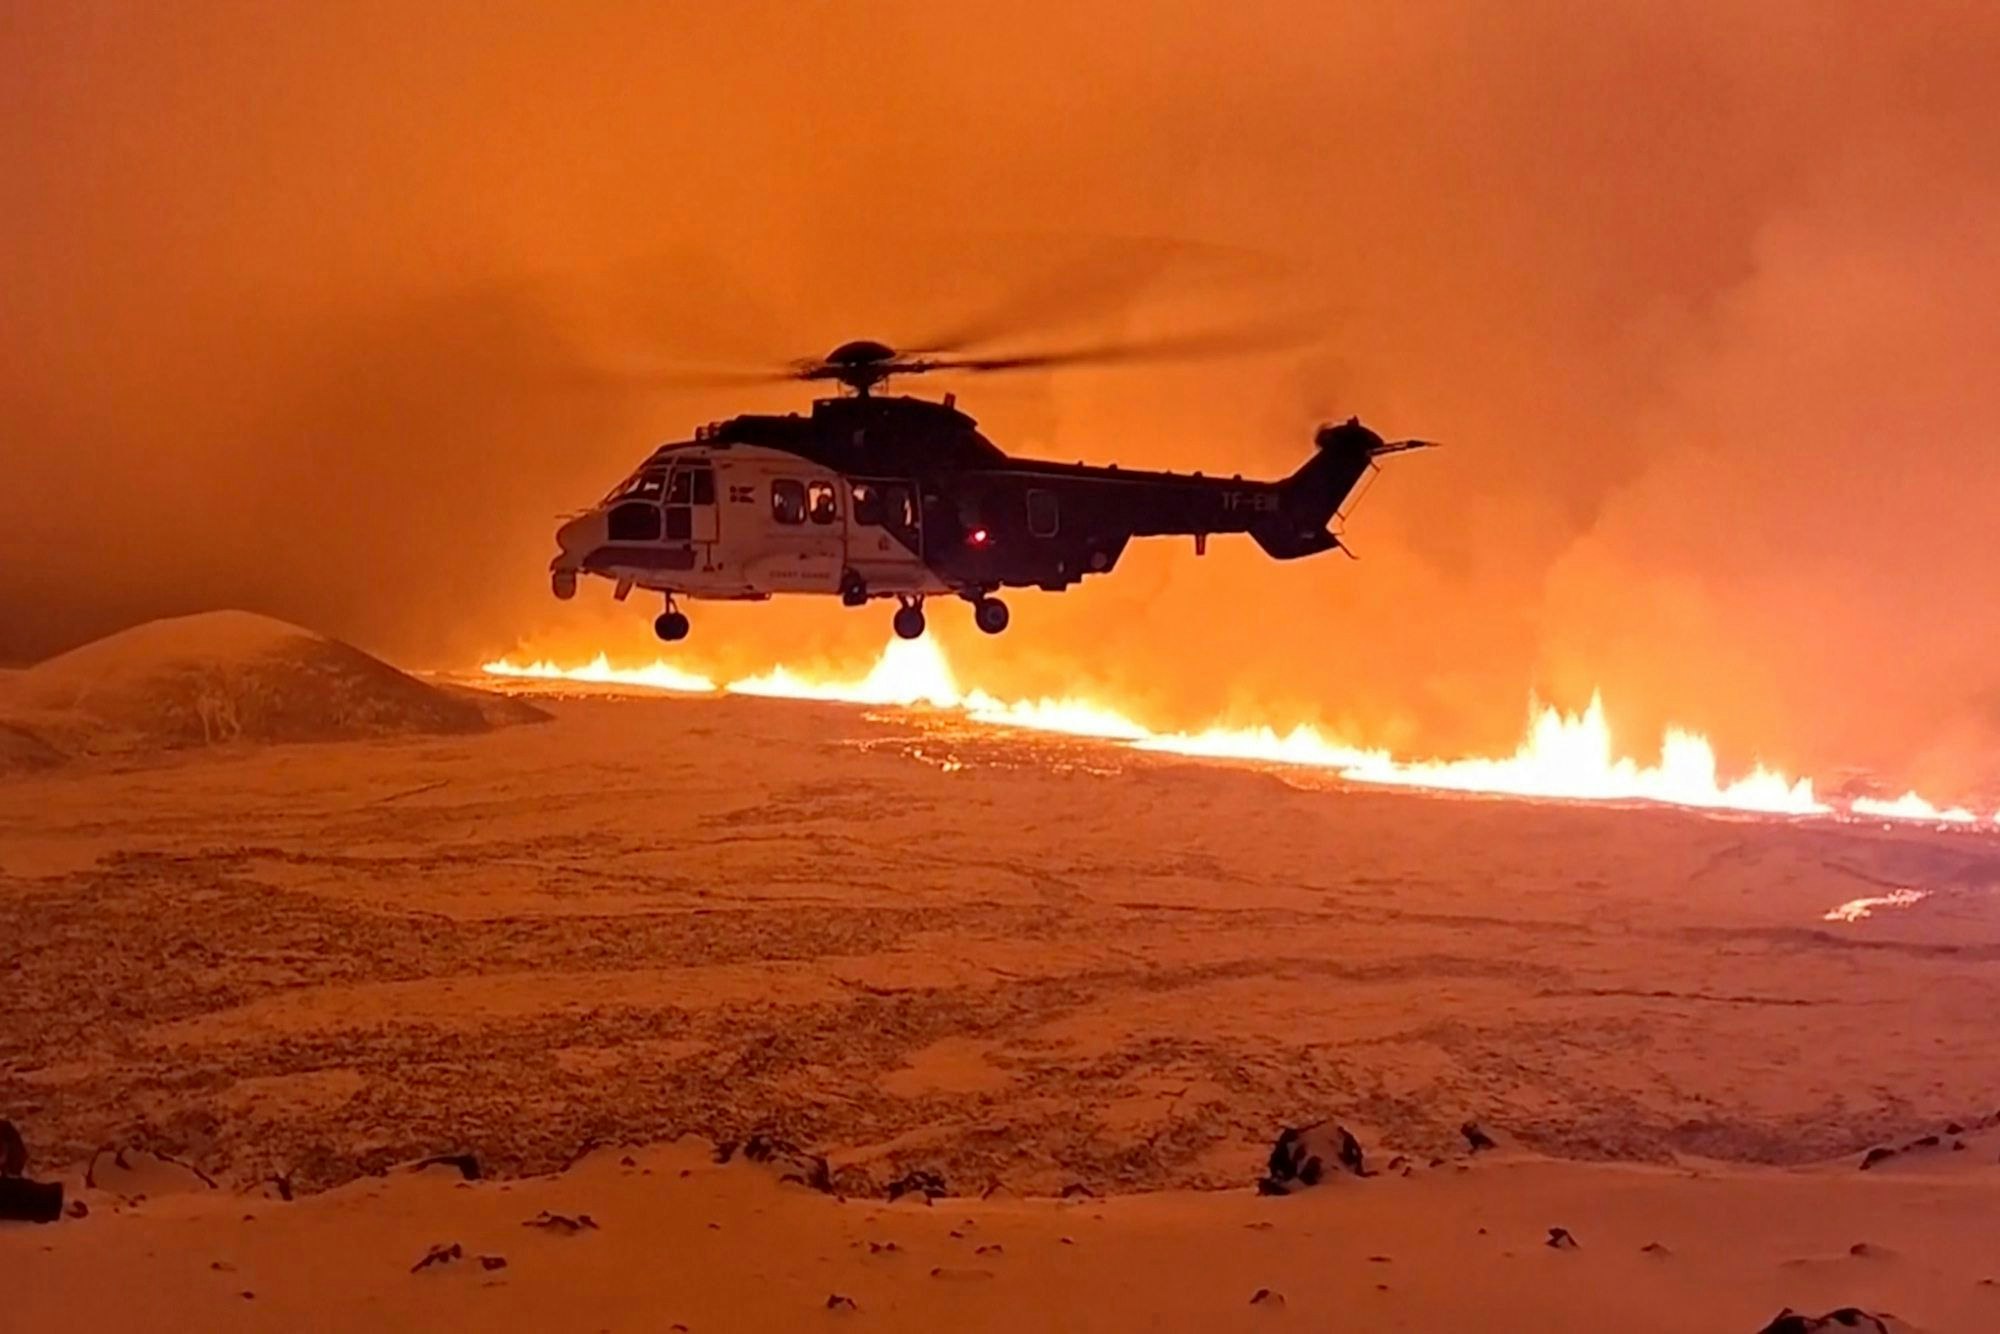 Vulkanausbruch auf Island: Ein Helikopter kreist über dem Lava-Gebiet.